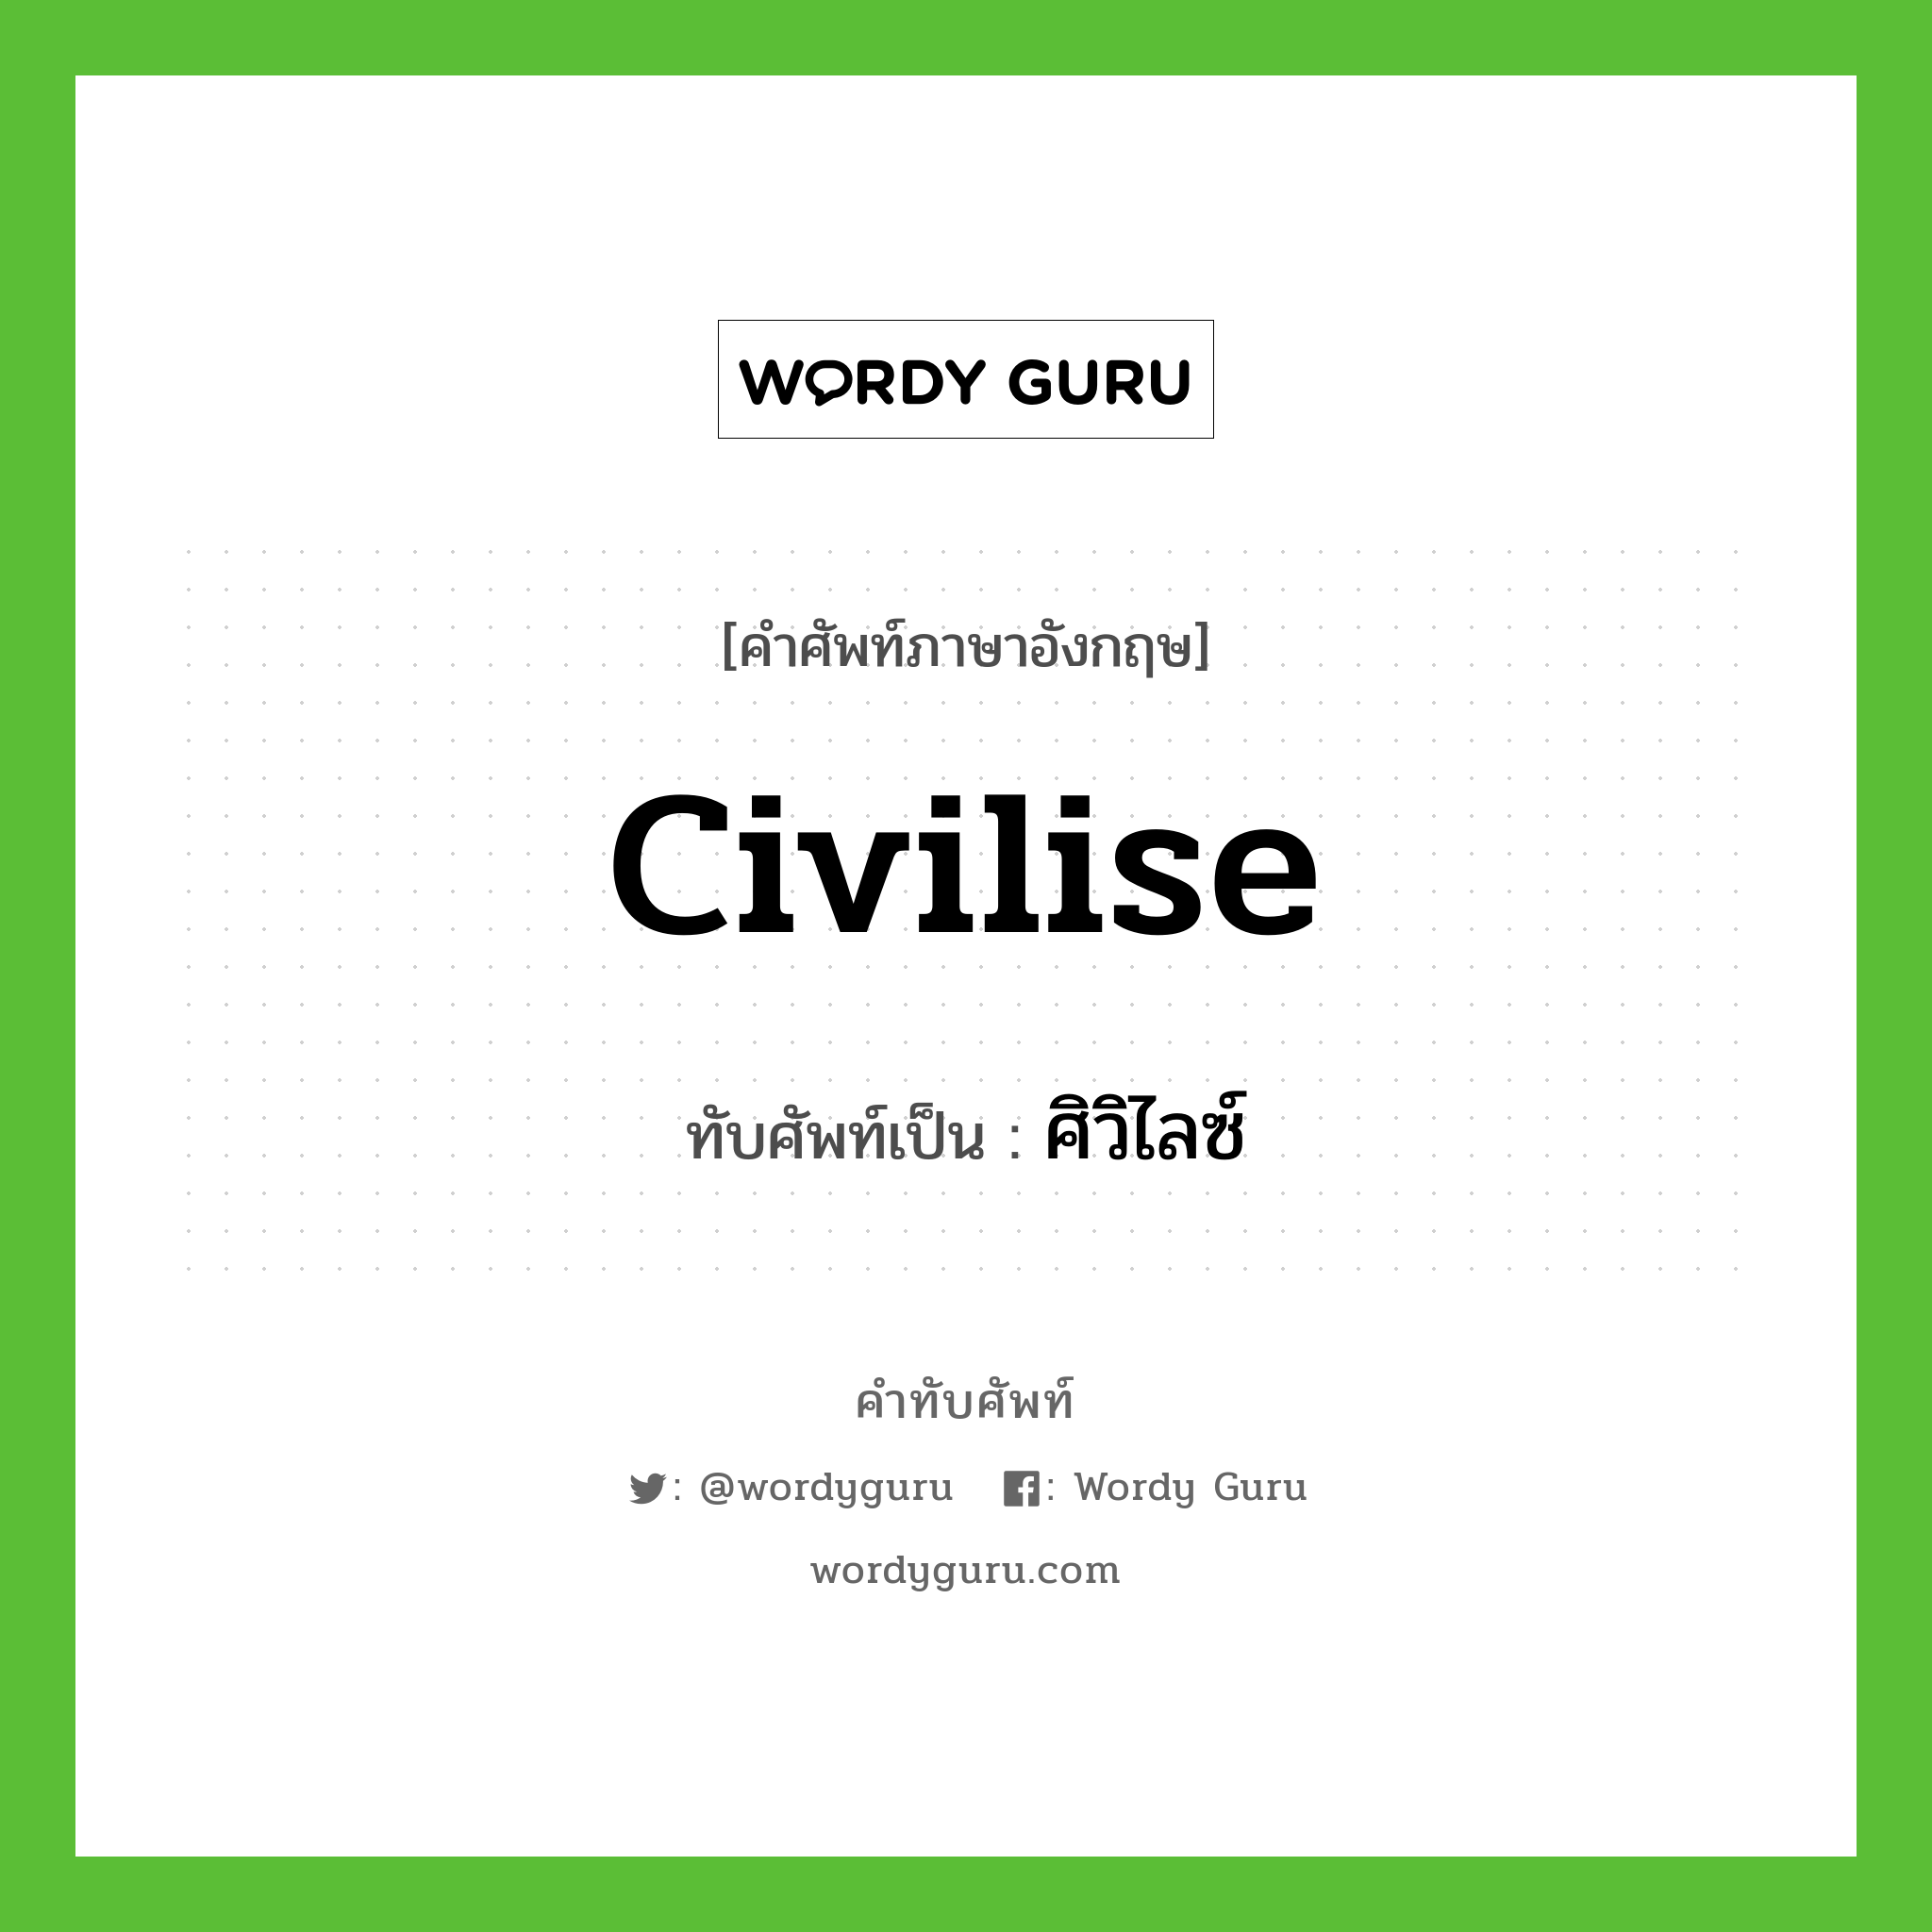 civilise เขียนเป็นคำไทยว่าอะไร?, คำศัพท์ภาษาอังกฤษ civilise ทับศัพท์เป็น ศิวิไลซ์